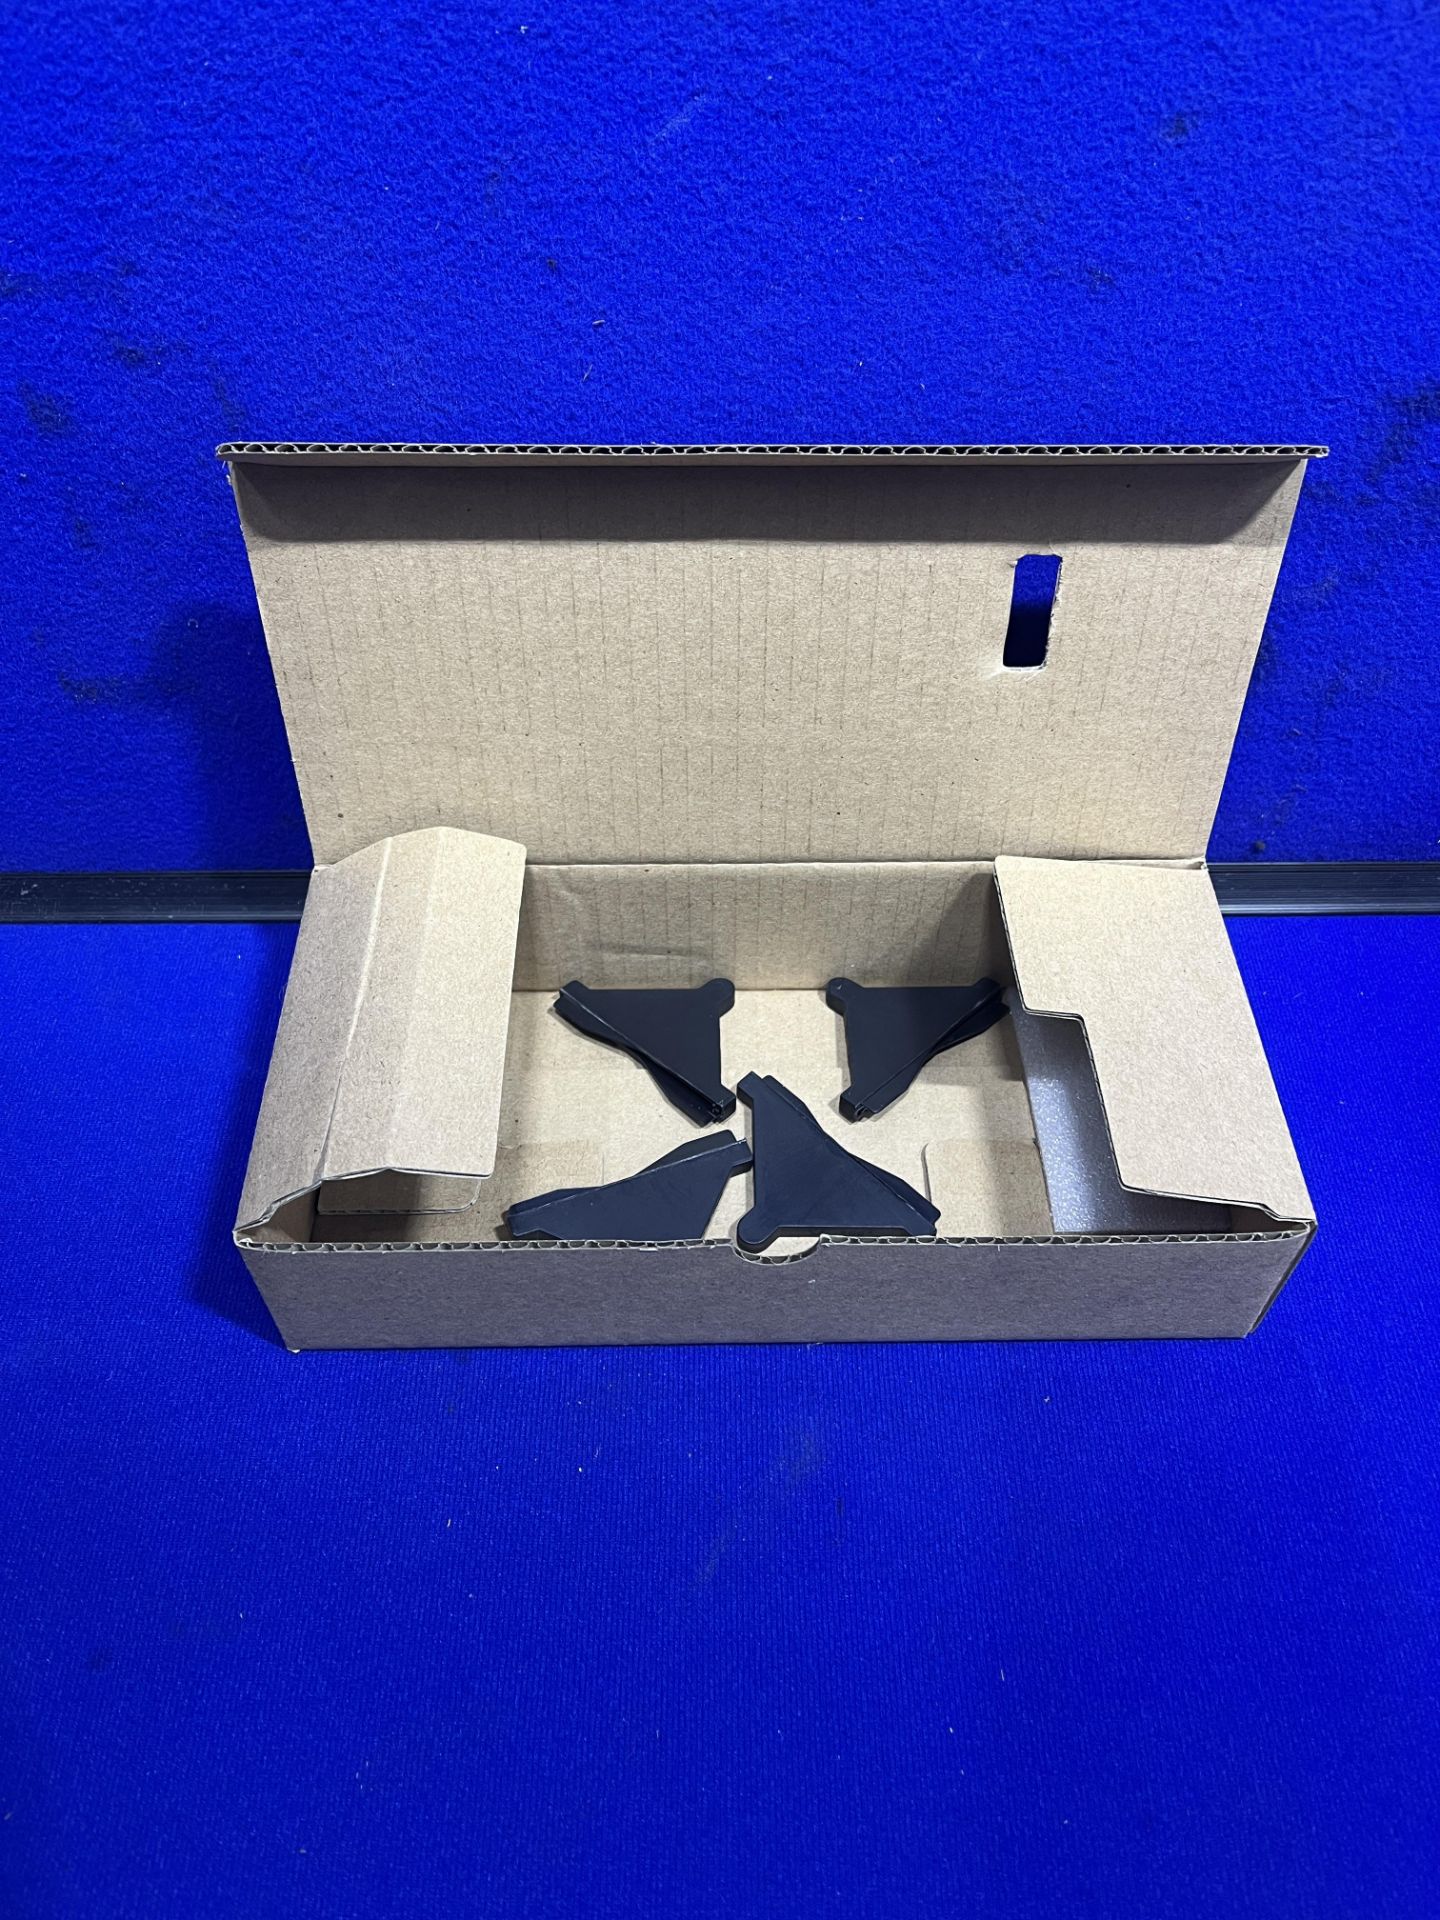 12 x Utimaker 3D Printer Accessory Box - Image 6 of 8